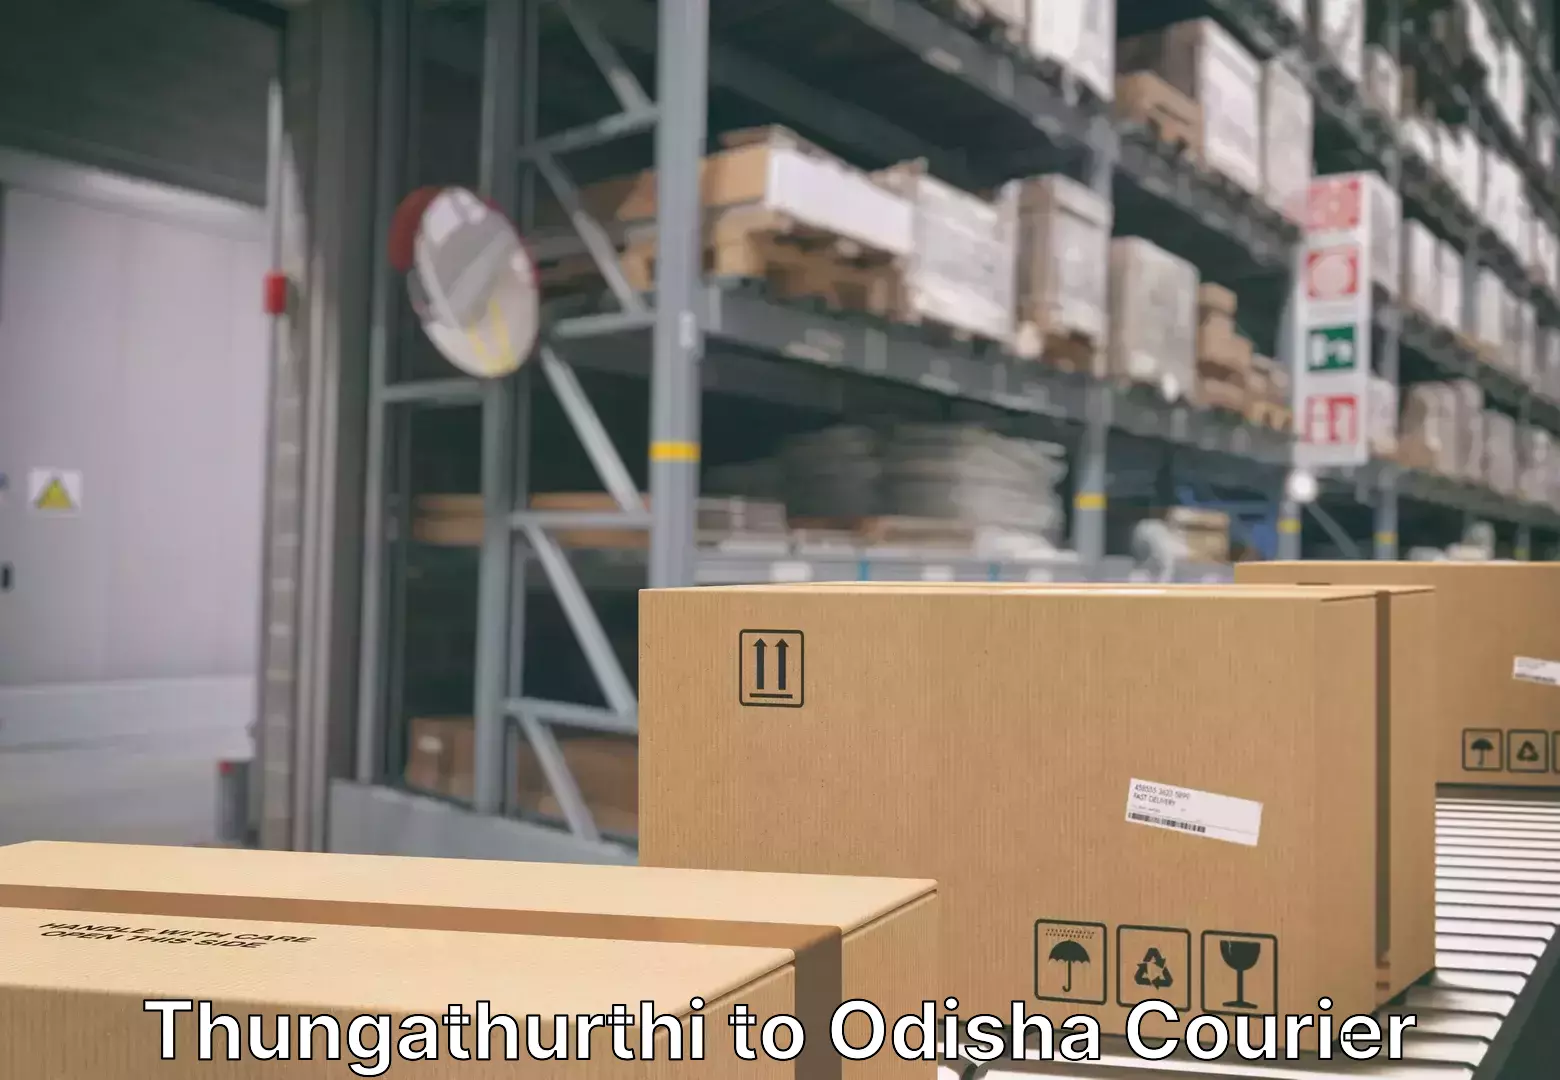 Household goods transport service Thungathurthi to Odisha